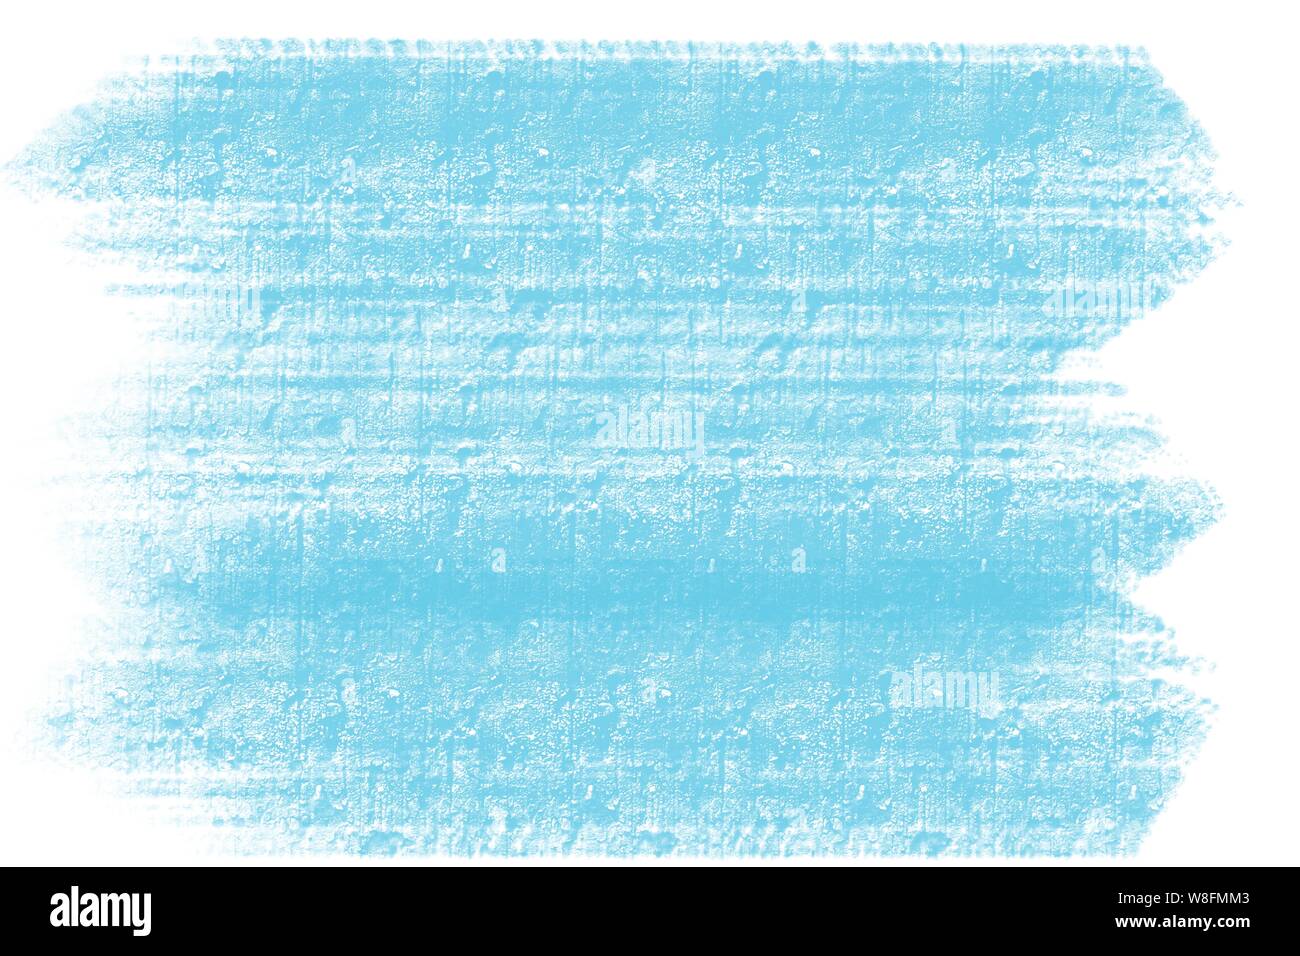 La main bleue coup de pinceau rugueux ciment carreau de mur motif avec marges blanches Banque D'Images